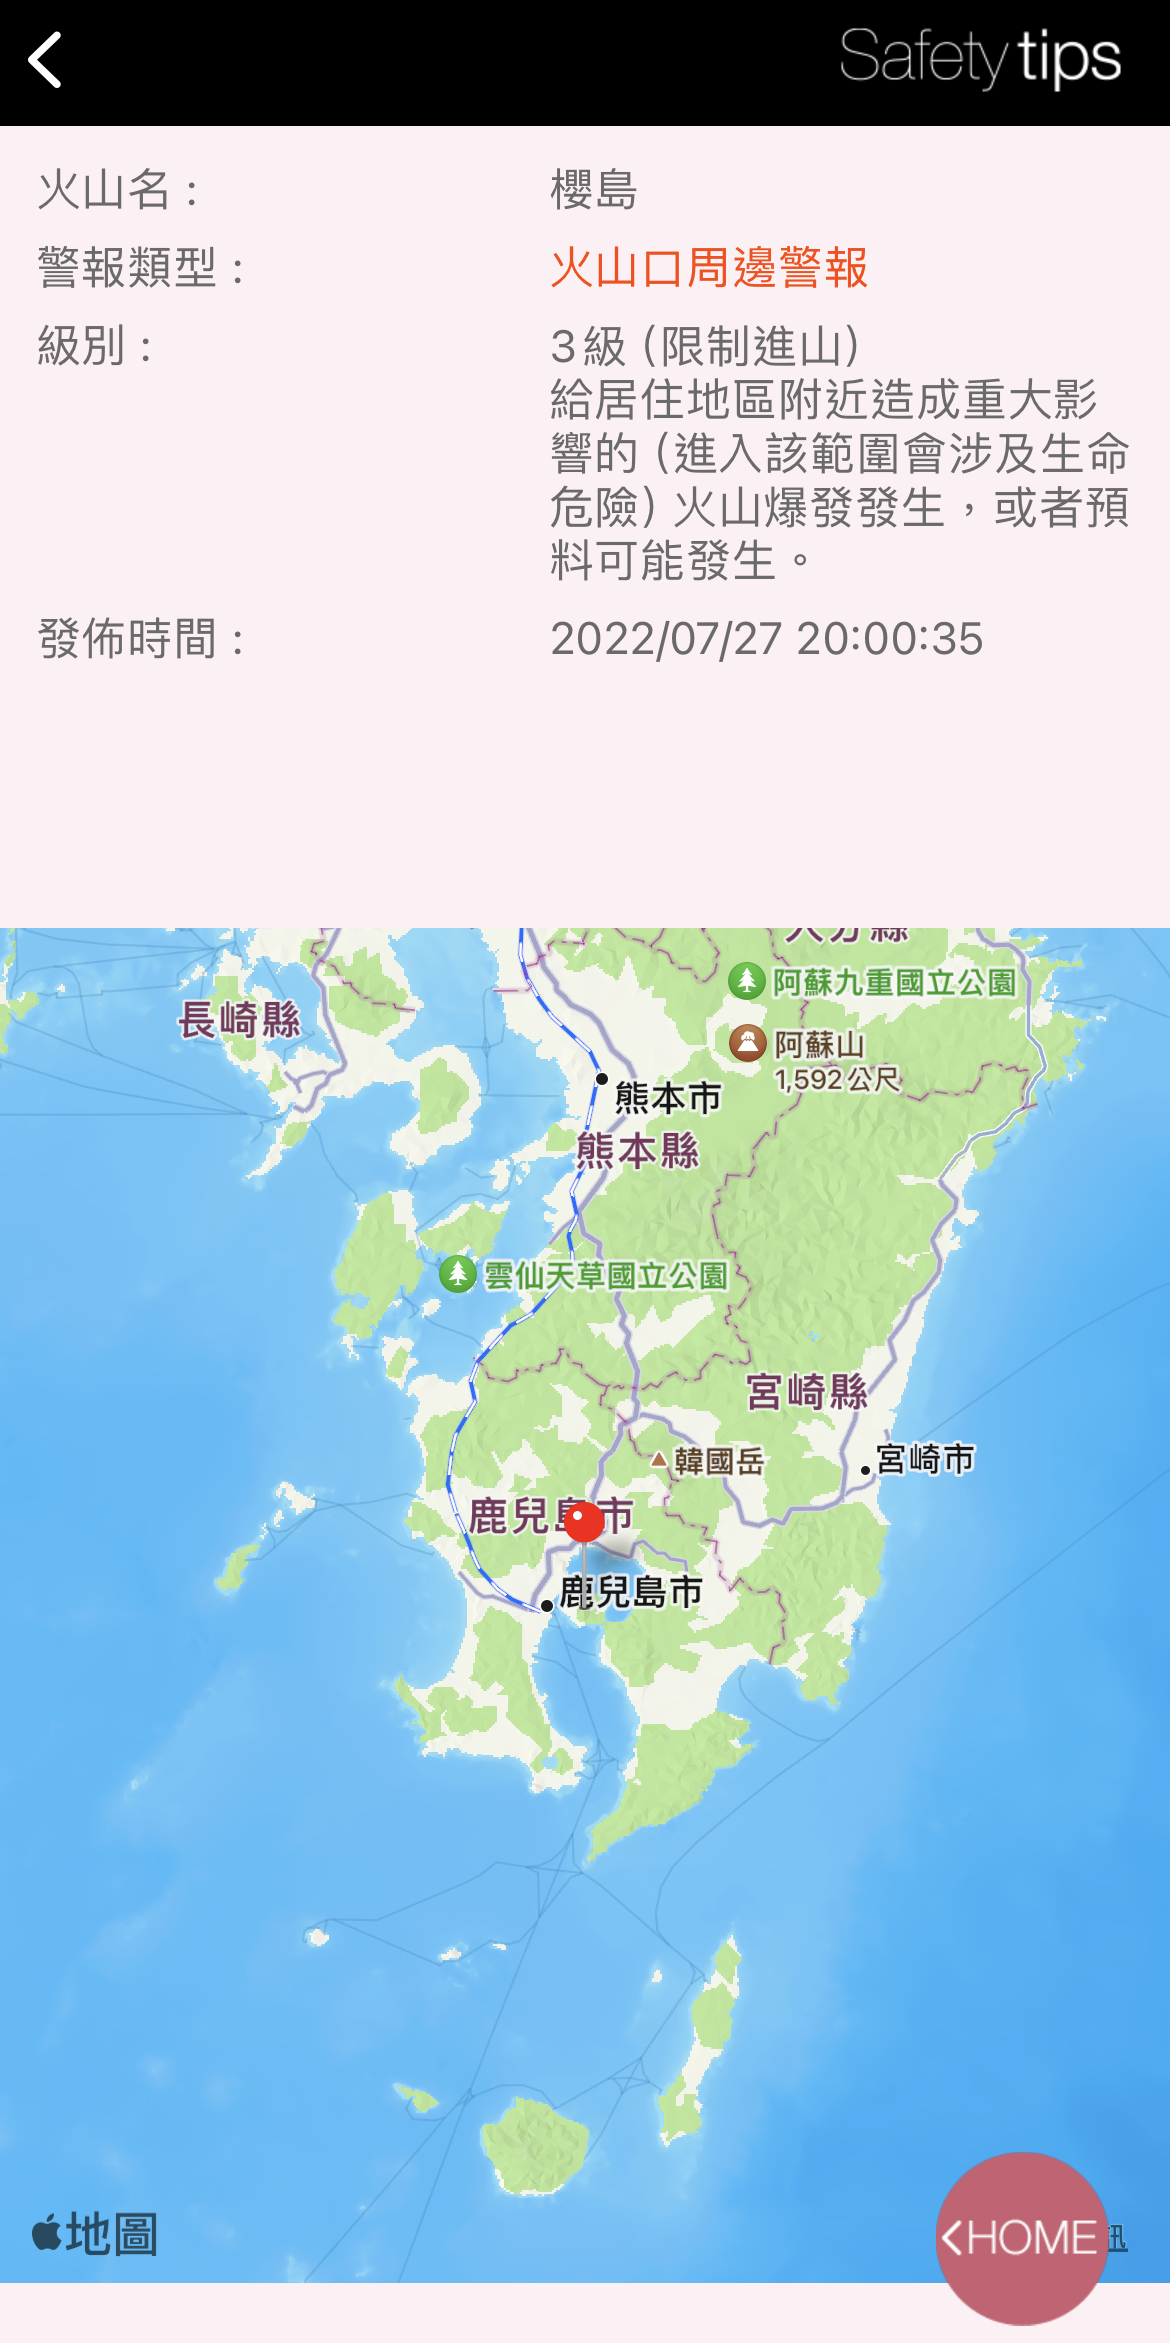 日本外國旅客專用資訊警戒APP「Safety tips」支援繁中可獲取地震速報、海嘯警報等通知 - 電腦王阿達